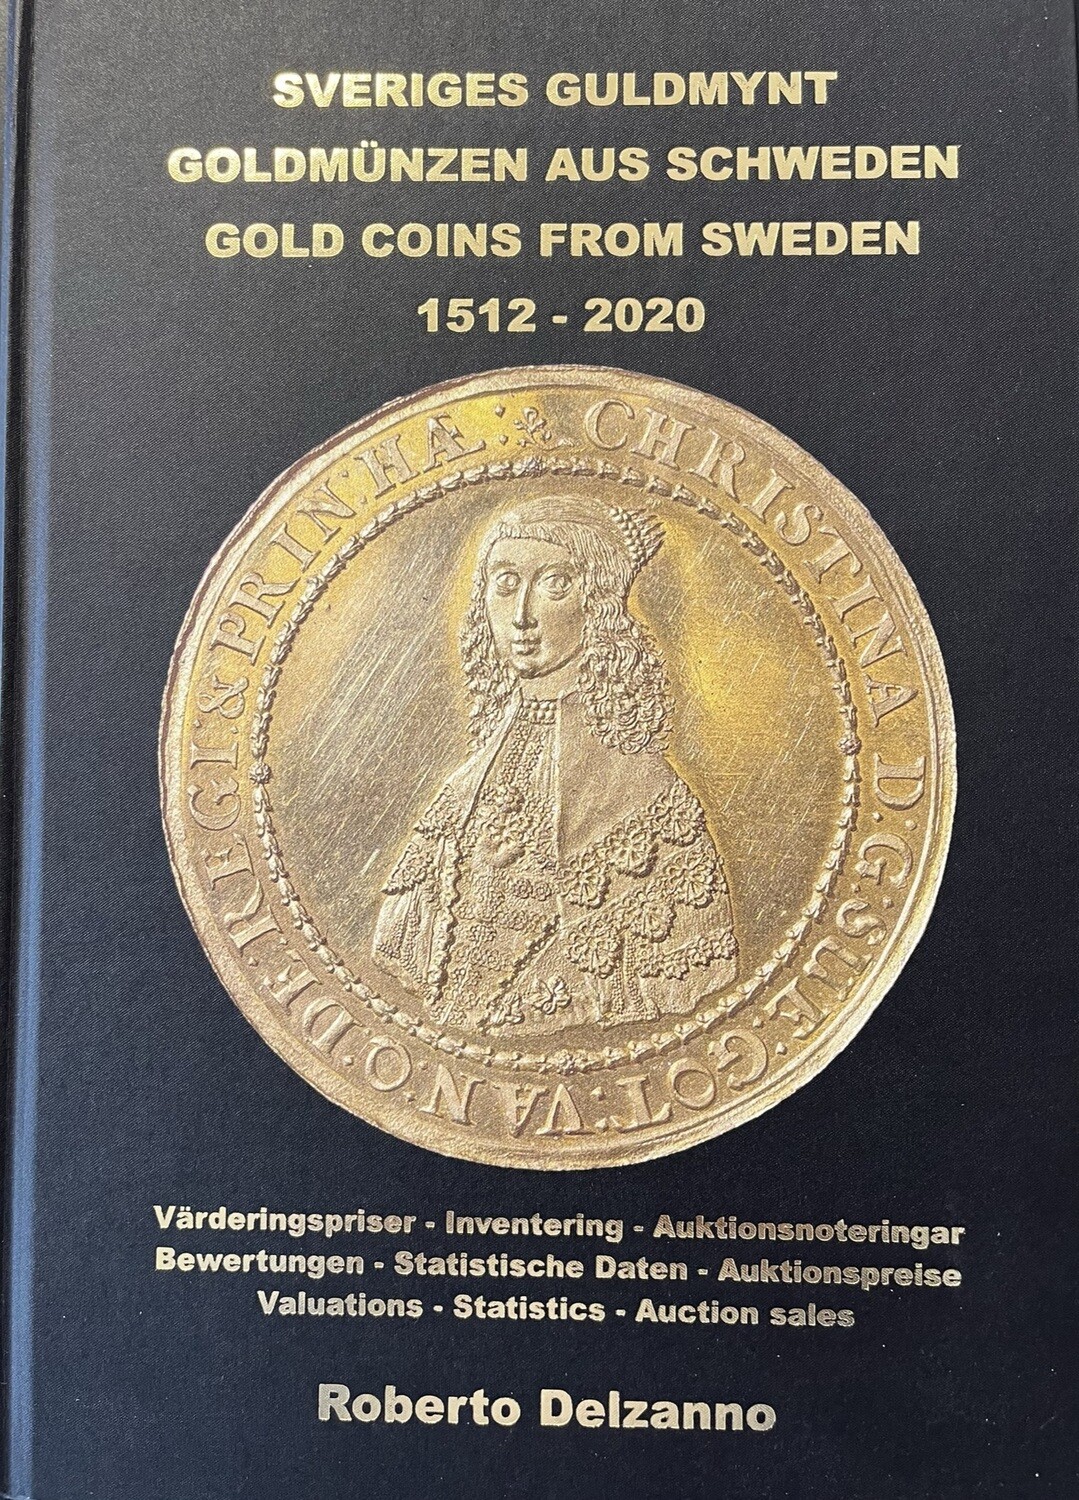 Delzanno, Roberto. Sveriges Guldmynt 1512-2020 - Goldmünzen aus Schweden